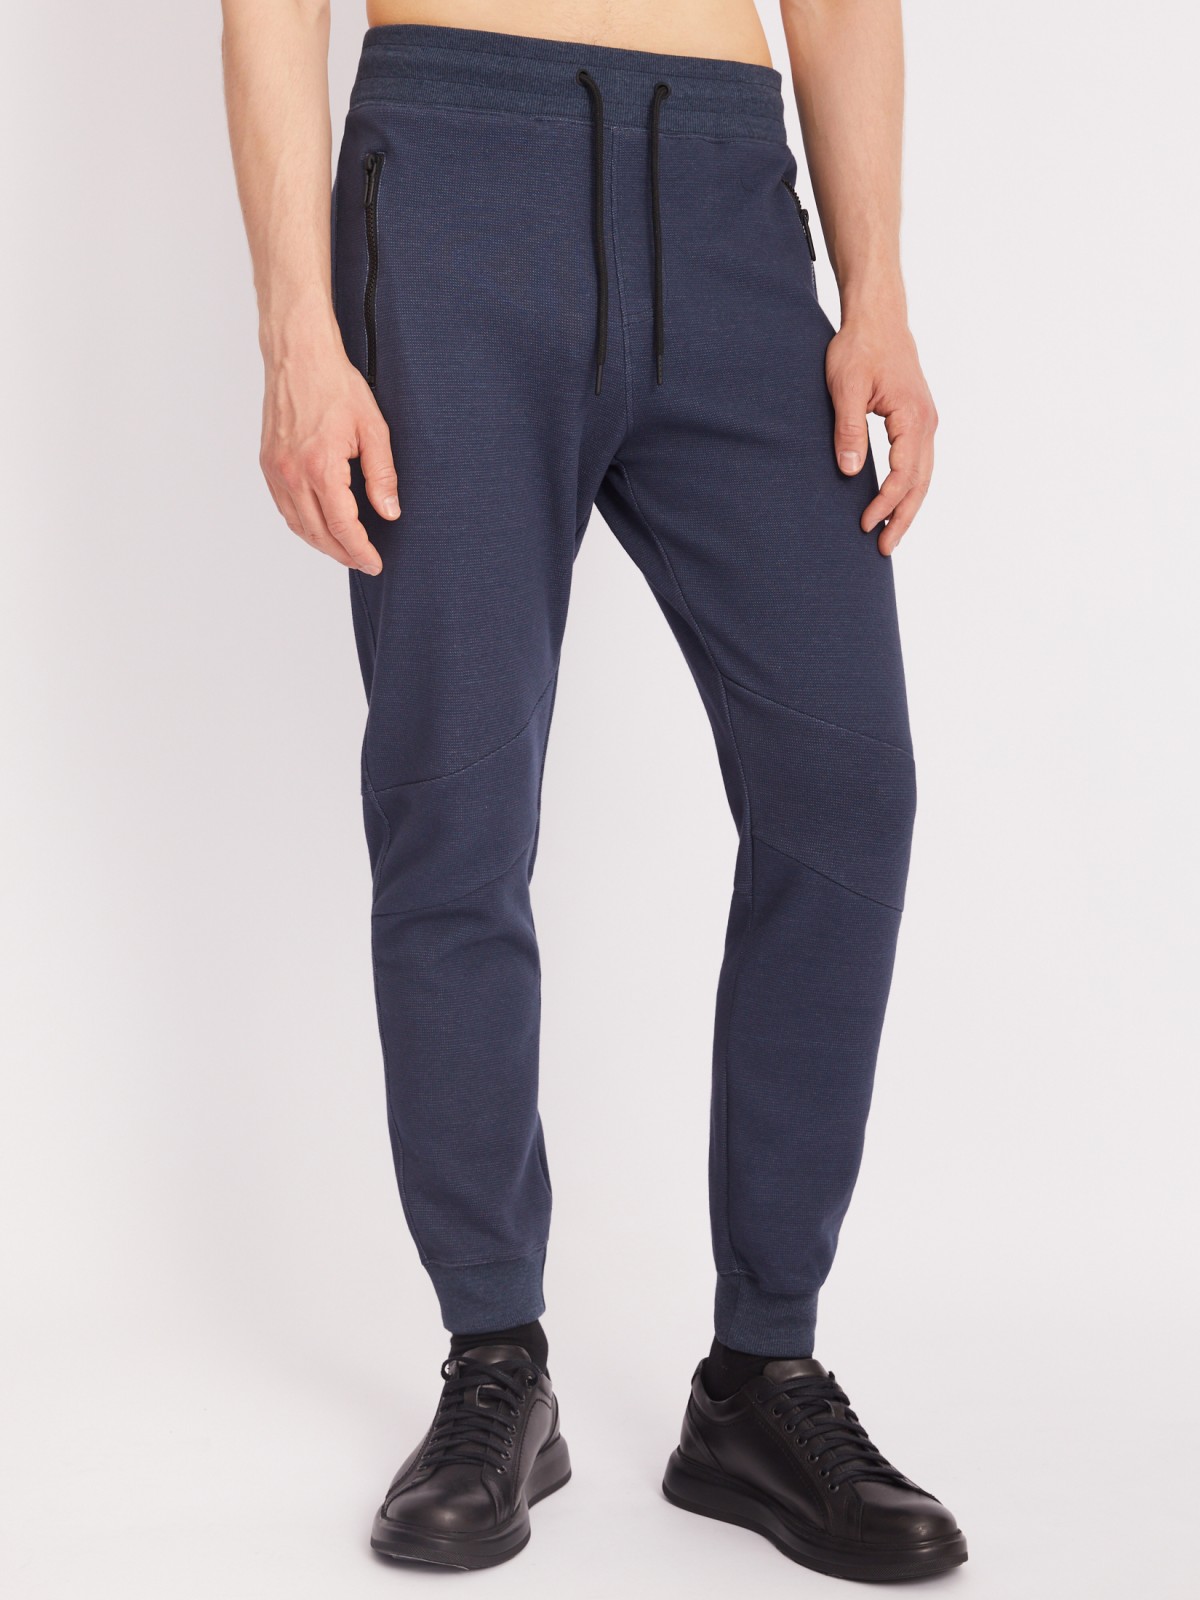 Трикотажные брюки-джоггеры в спортивном стиле zolla 213317679023, цвет синий, размер S - фото 2